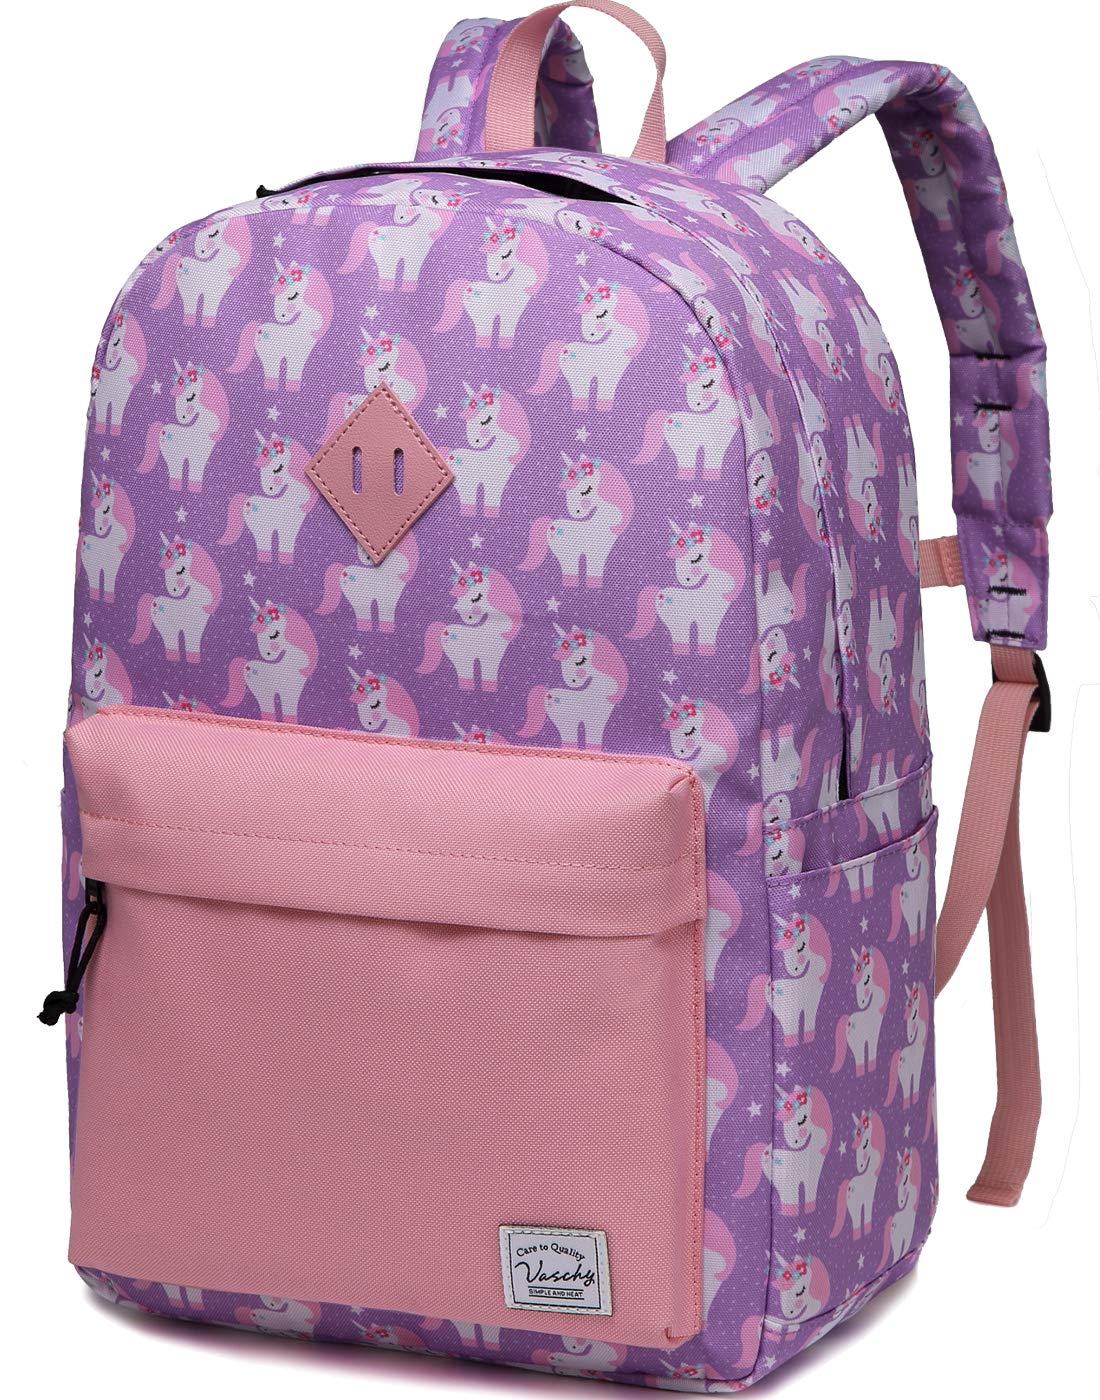 Retro Unicorn Backpack Pink Large